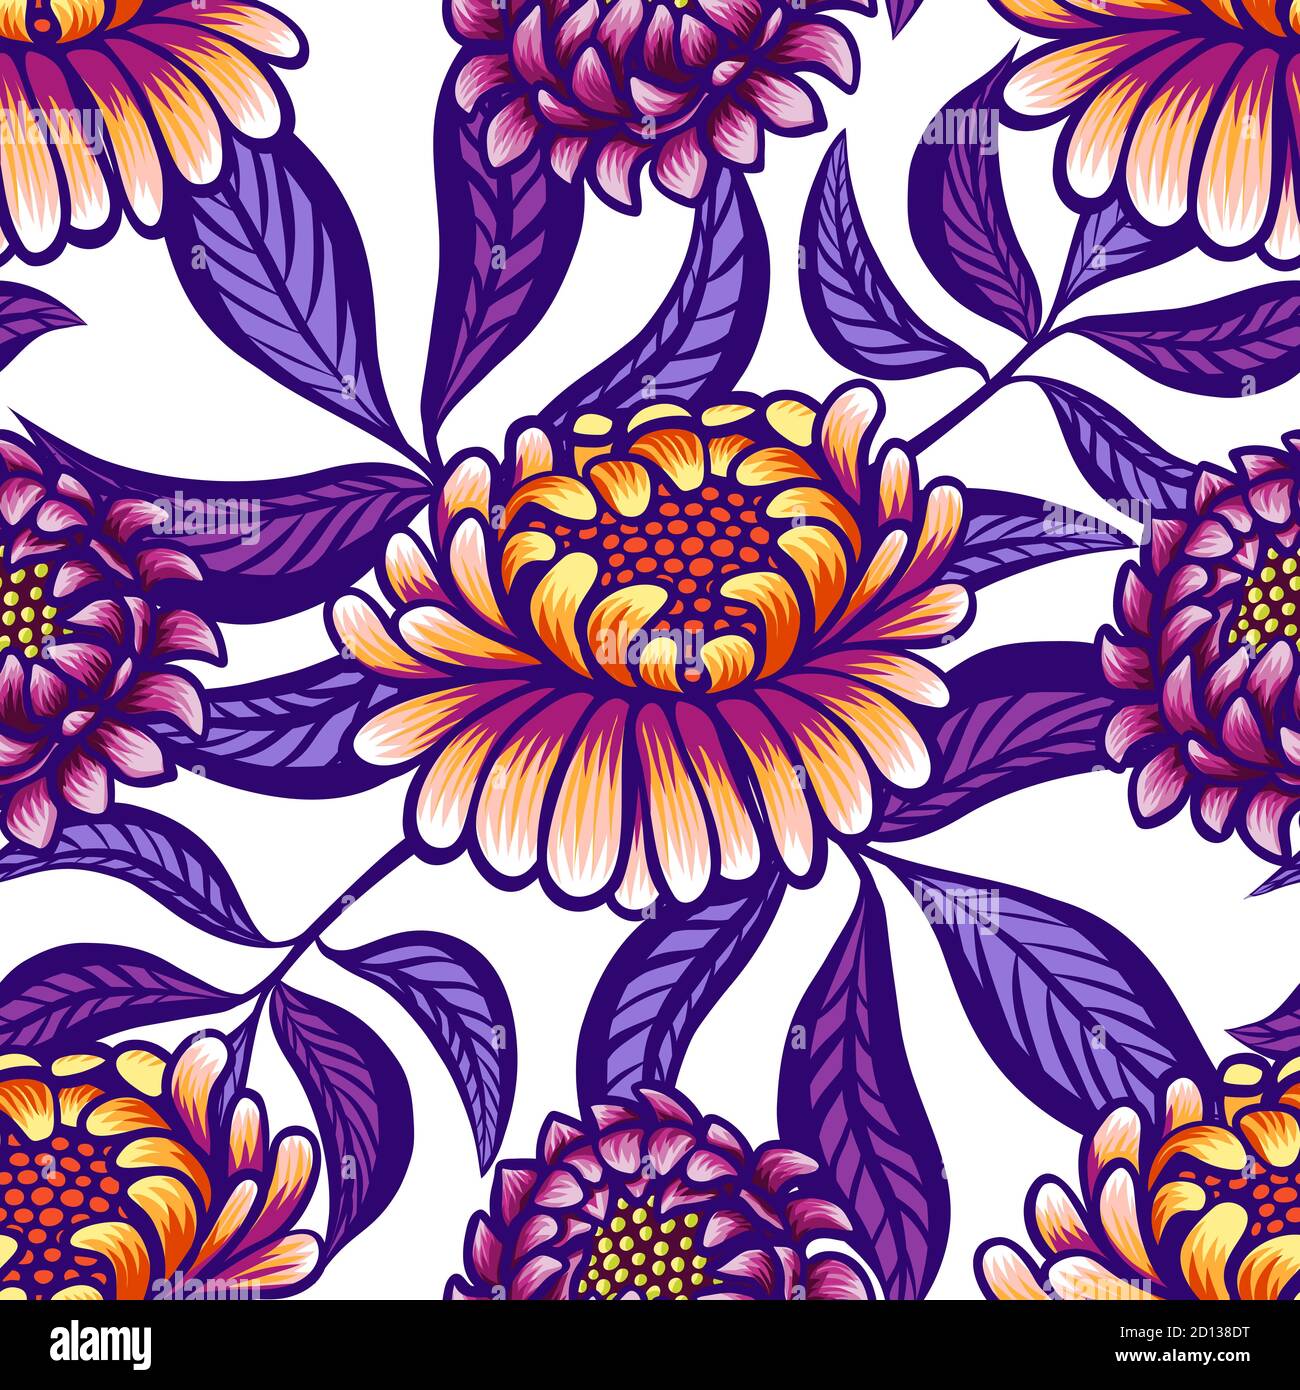 Motivo vintage floreale disegnato a mano senza cuciture con fiori e foglie. Favolosi fiori viola-arancio e foglie di lilla su sfondo bianco. Tropicale Illustrazione Vettoriale